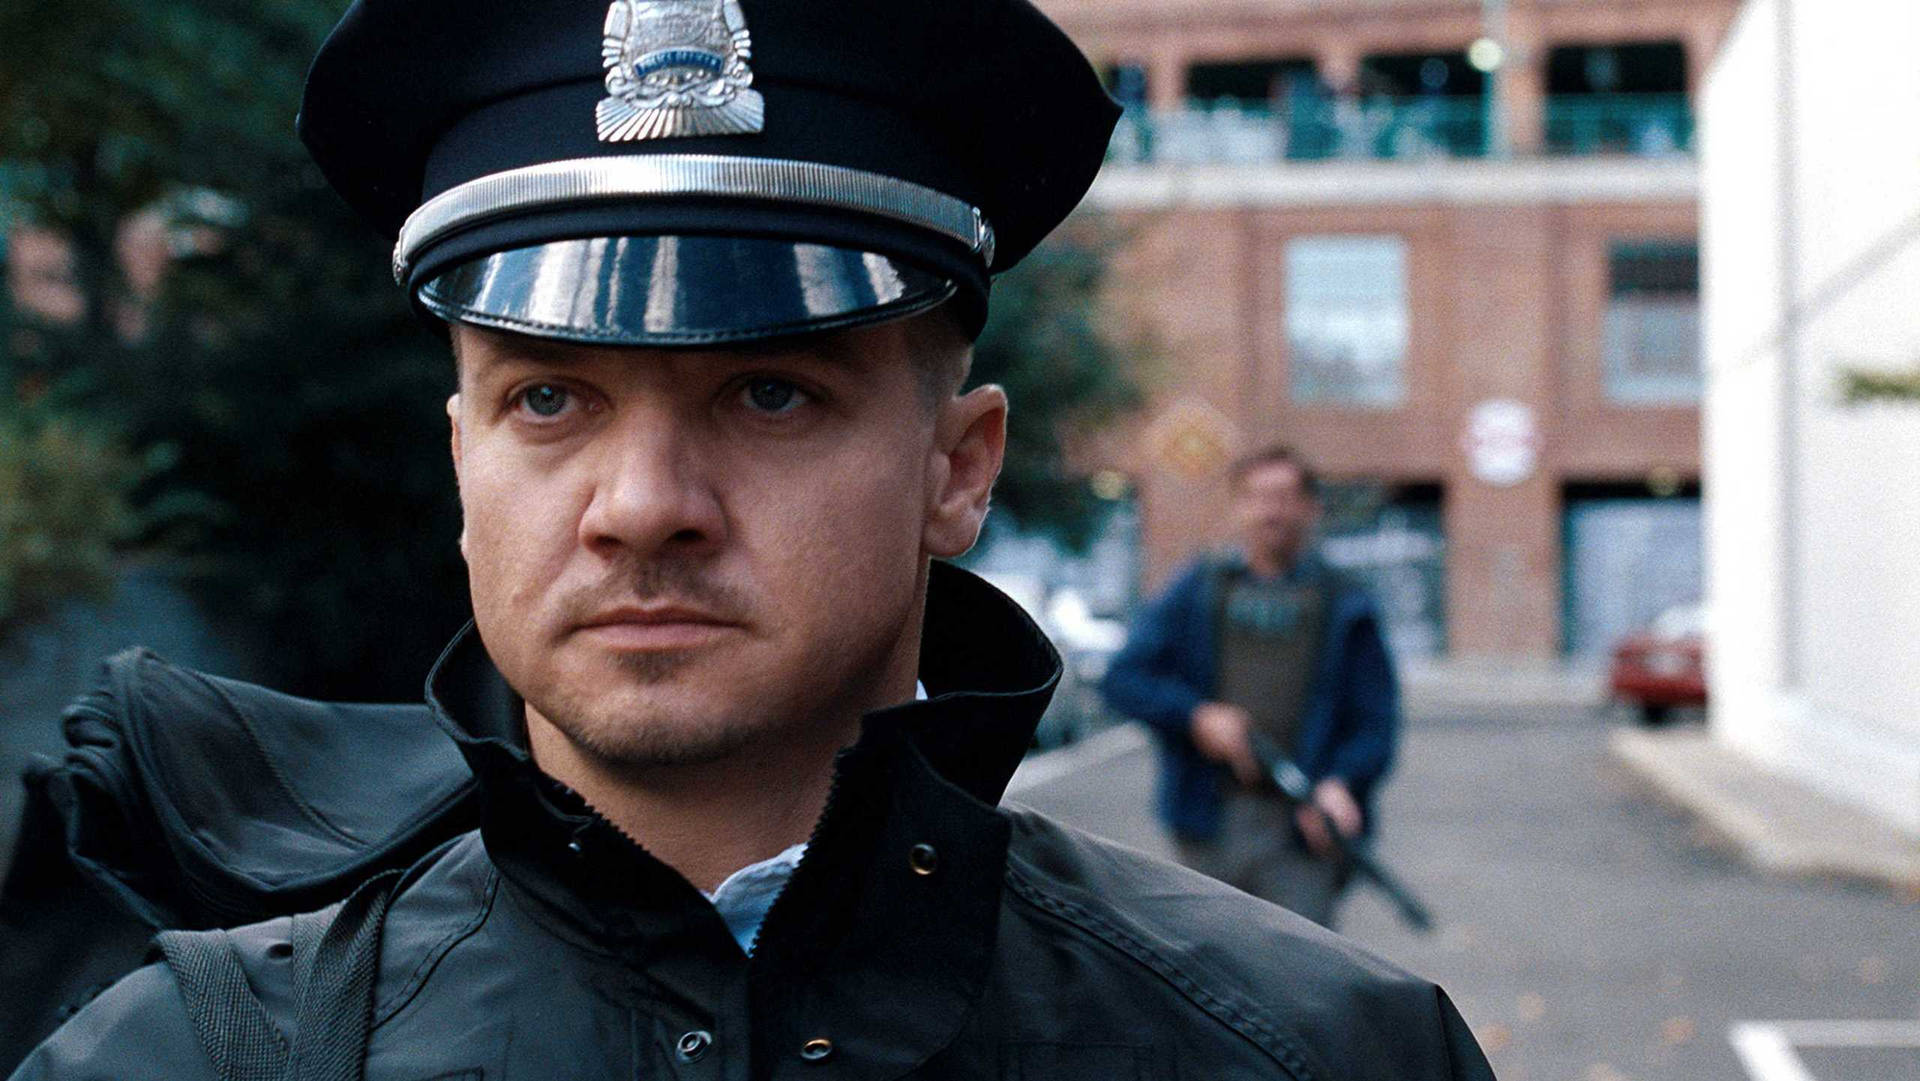 Jeremy Renner Portrays A Police Officer Background